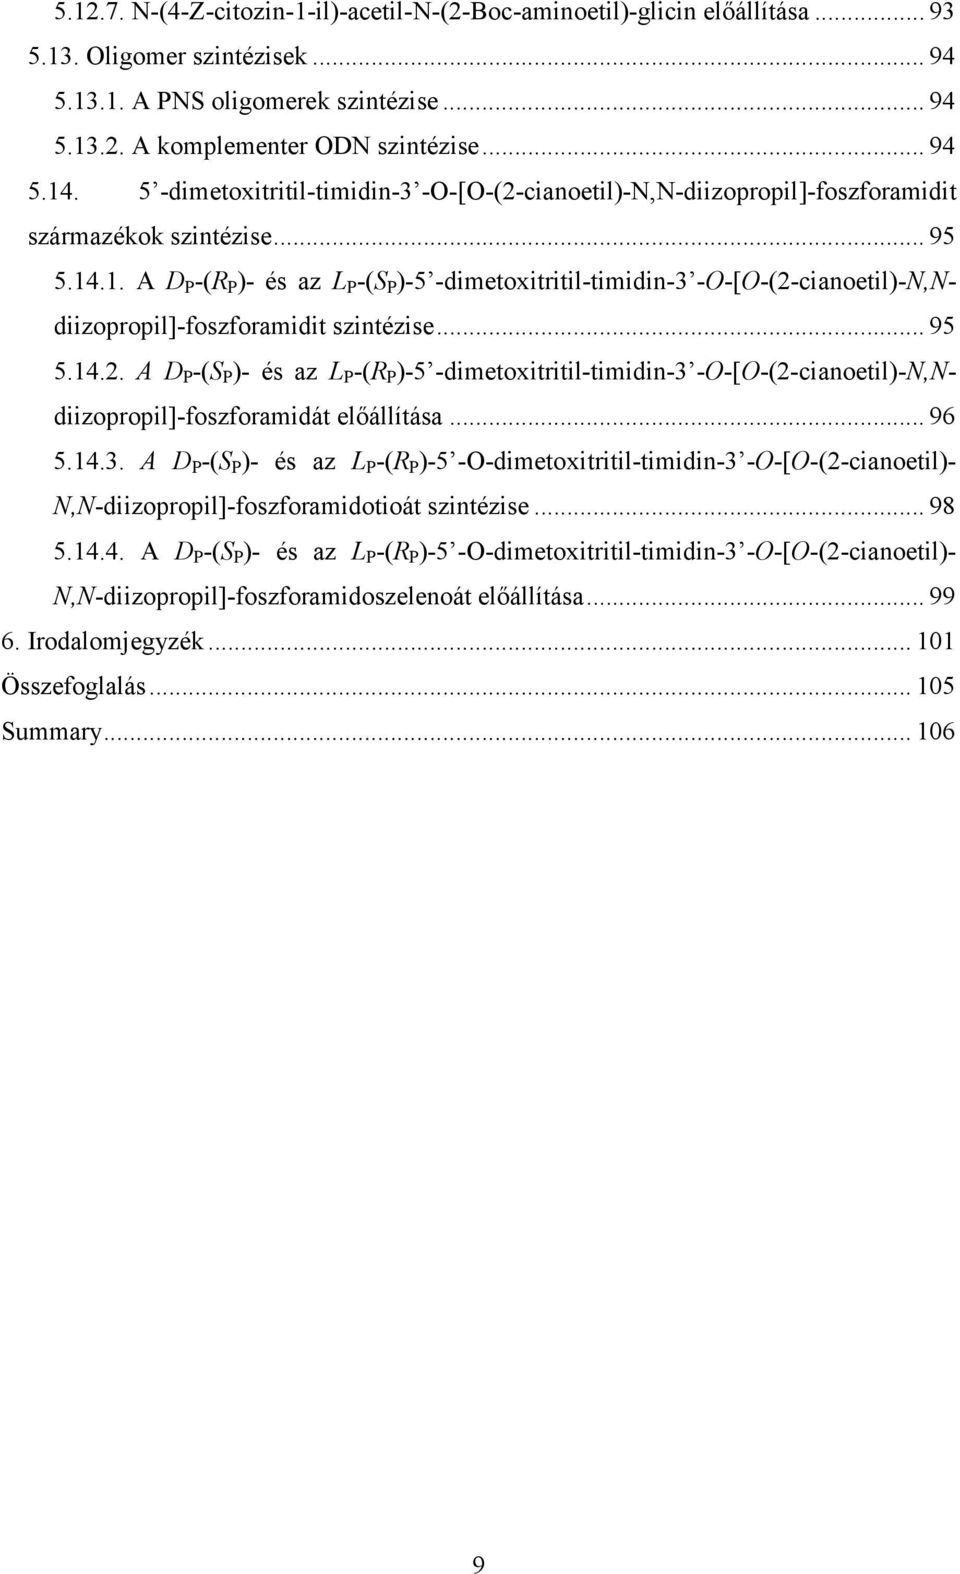 .1. A D P -(R P )- és az L P -(S P )-5 -dimetoxitritil-timidin-3 --[-(2-cianoetil)-,diizopropil]-foszforamidit szintézise... 95 5.14.2. A D P -(S P )- és az L P -(R P )-5 -dimetoxitritil-timidin-3 --[-(2-cianoetil)-,diizopropil]-foszforamidát előállítása.